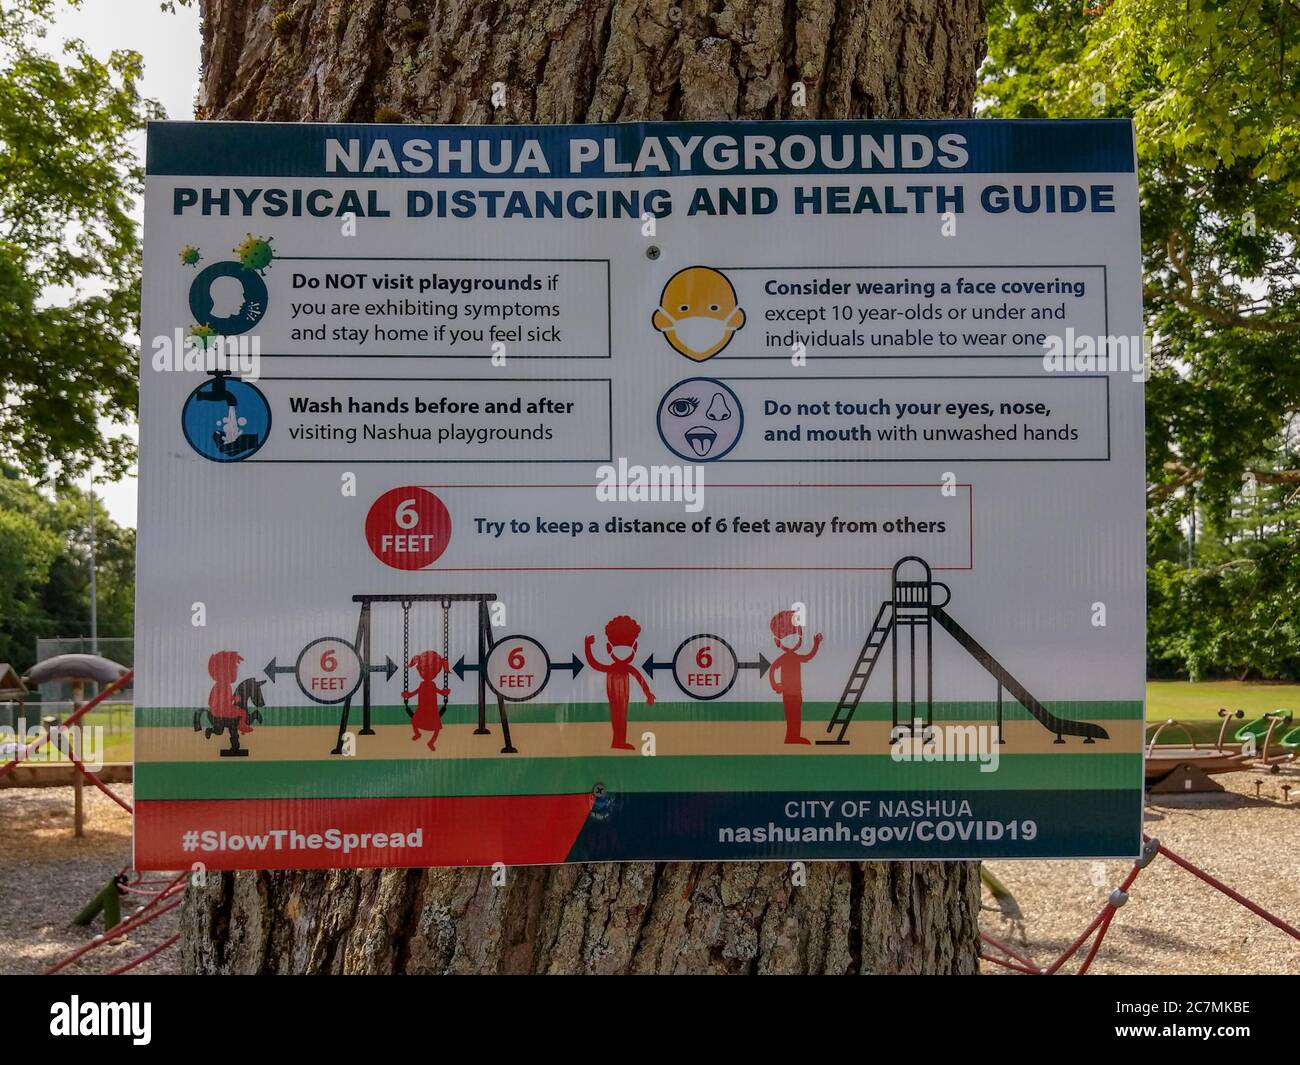 NASHUA, NH / USA - 10 LUGLIO 2020: Indicazioni per la distanza fisica e le linee guida per la salute di Nashua City Playgrounds, 10 luglio 2020 Foto Stock